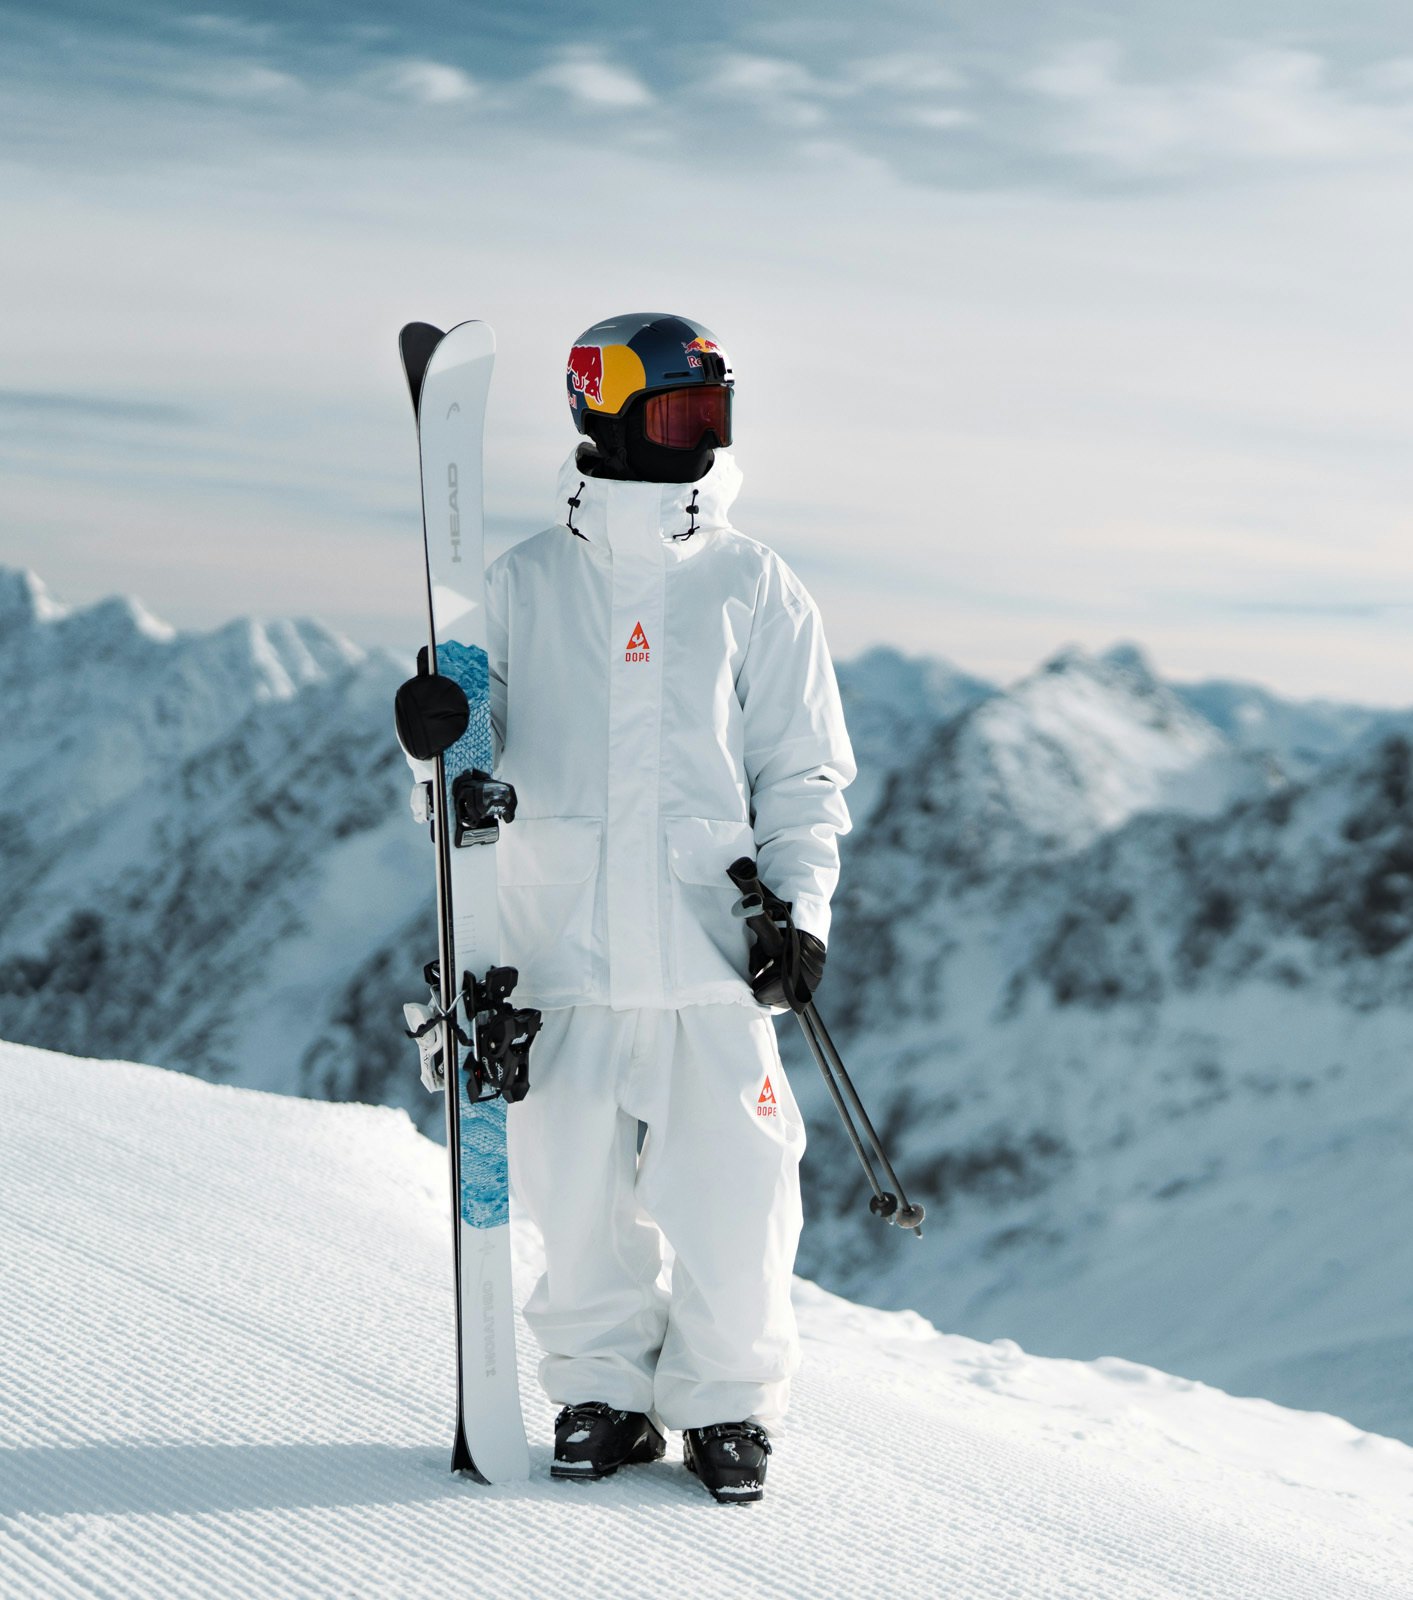 Bedste skijakke test | ridestore magazine